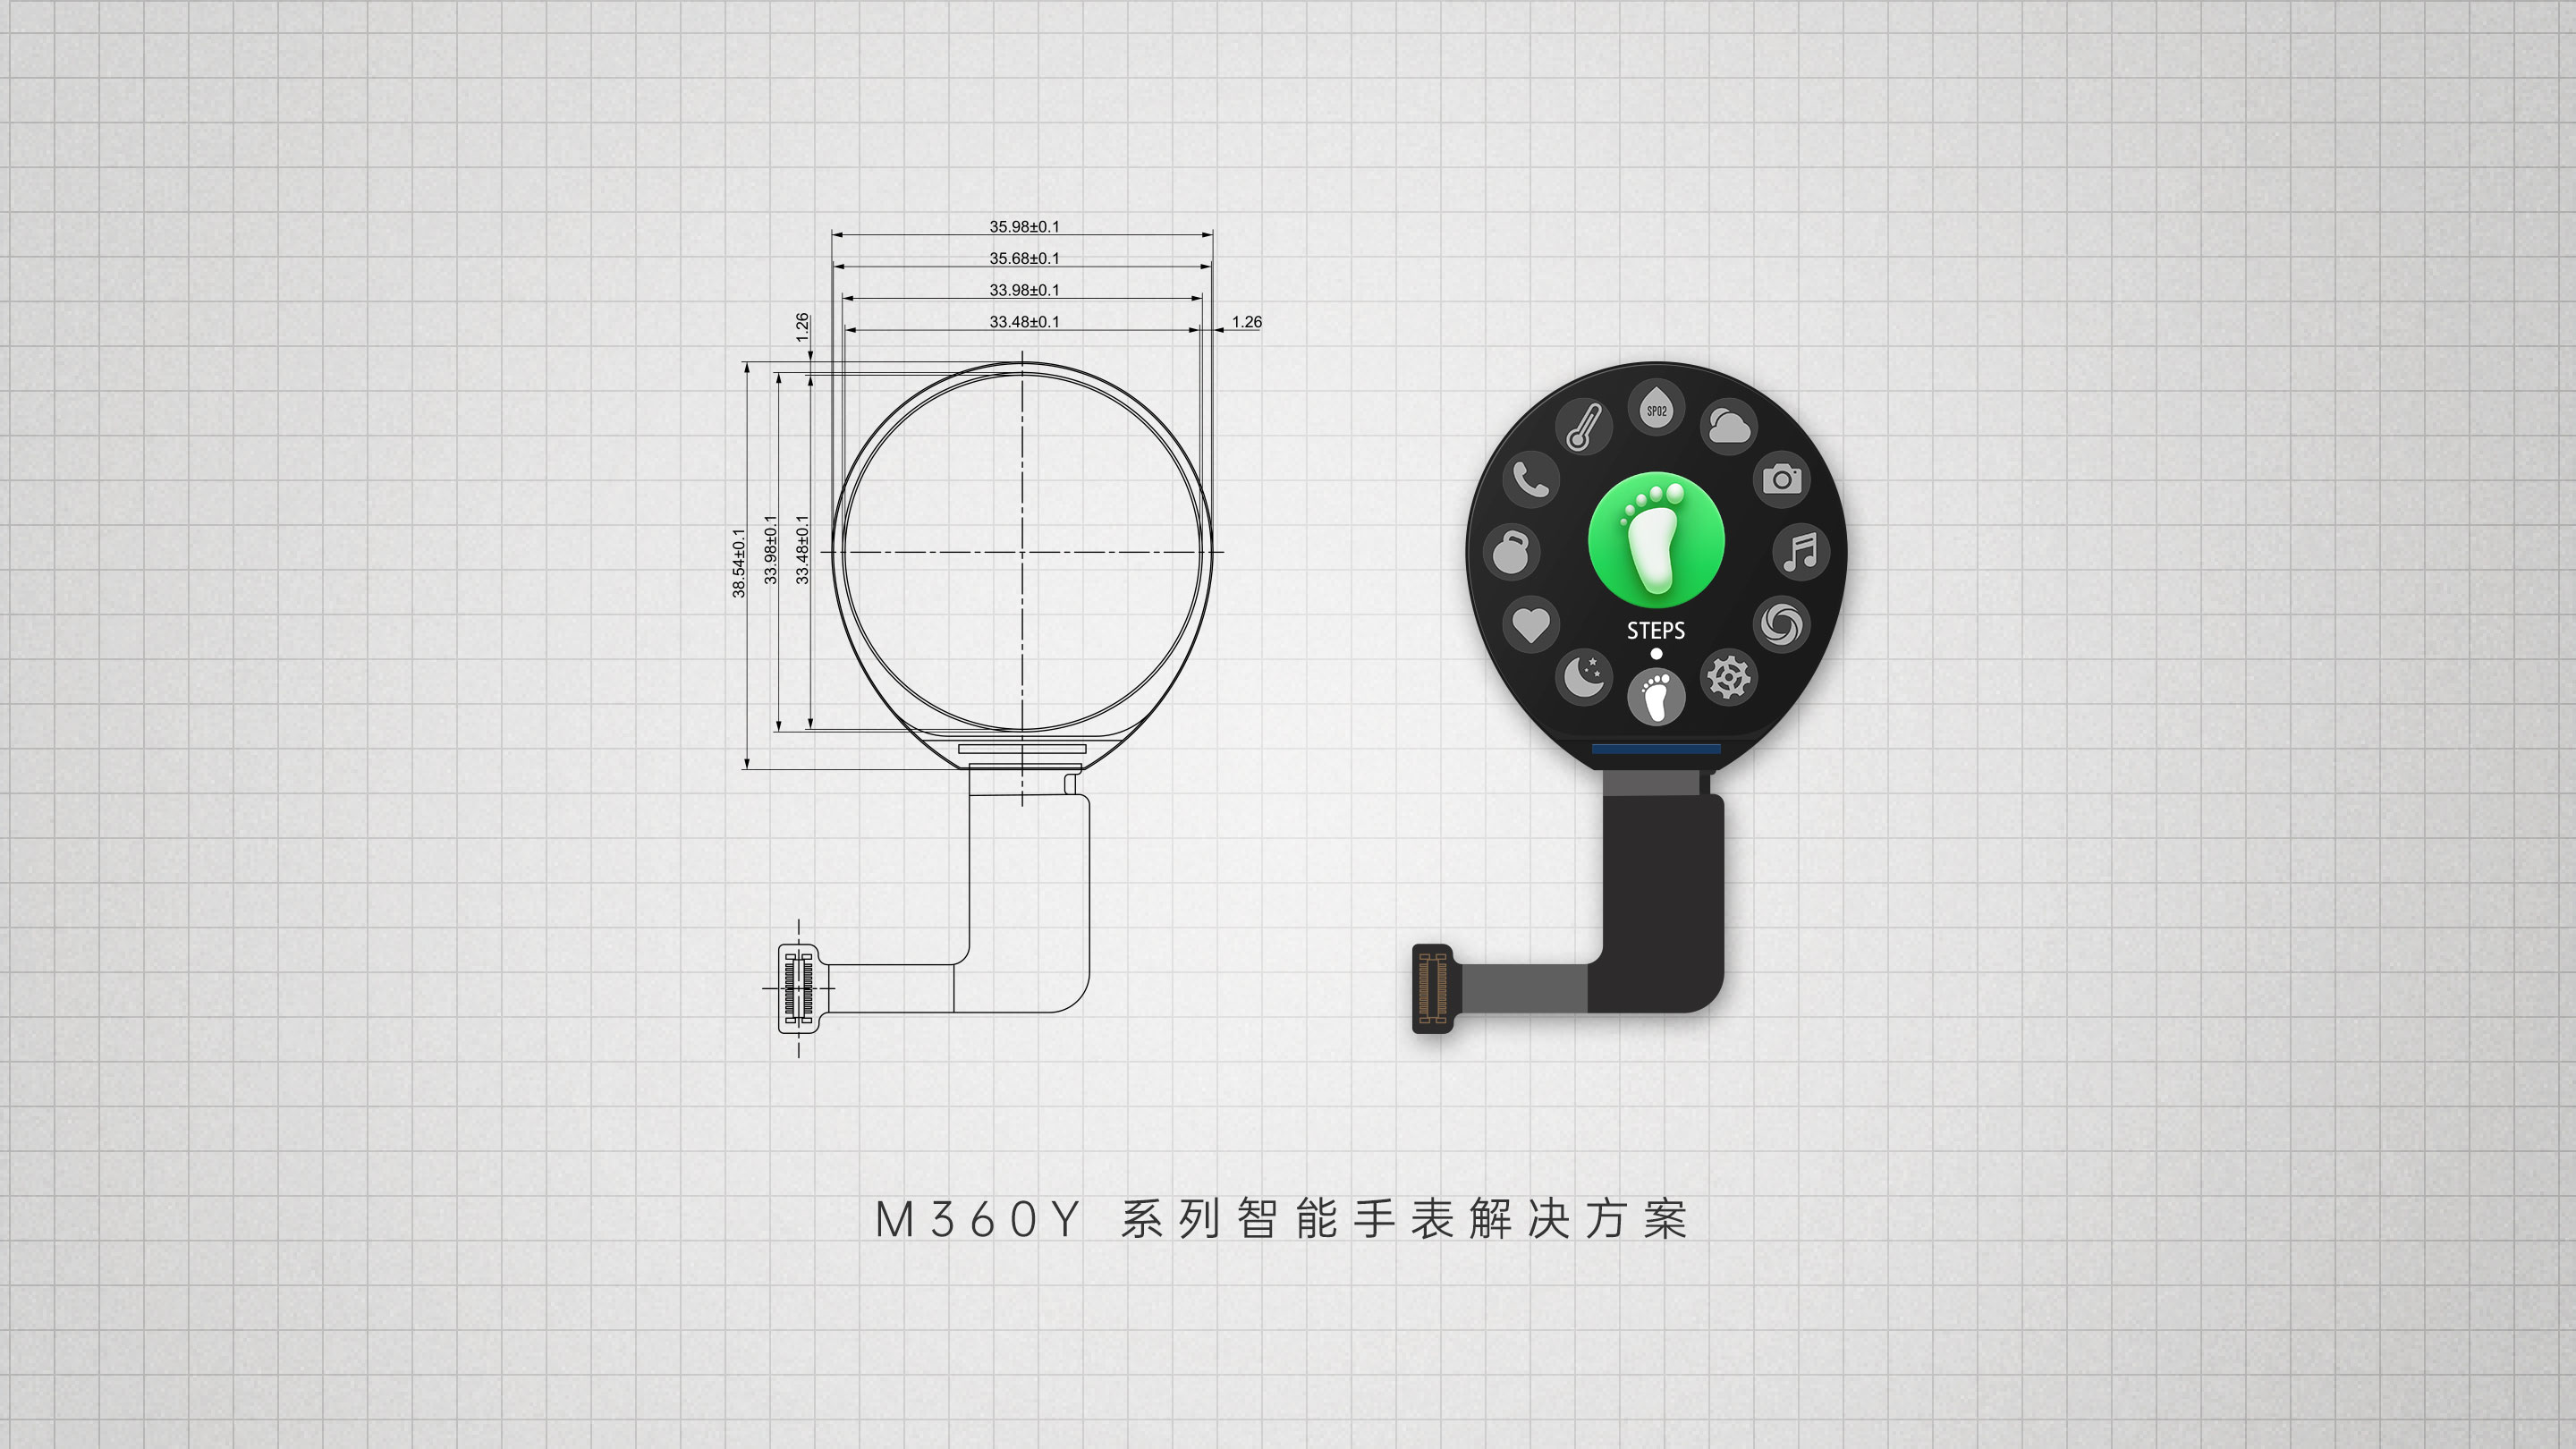 M360Y 系列智能手表解決方案